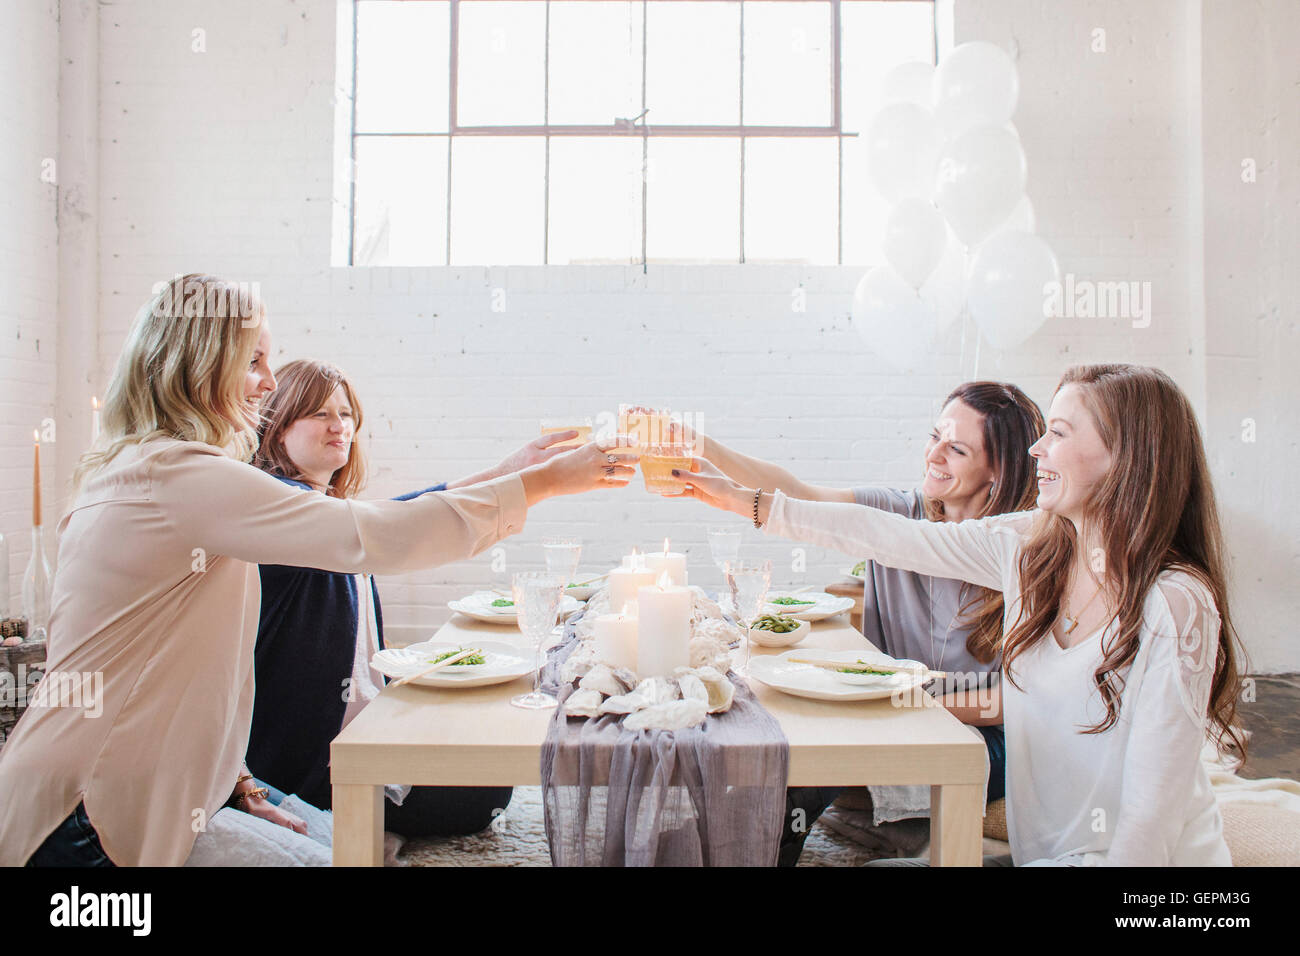 Vier Frauen sitzen an einem niedrigen Tisch, heben ihre Gläser in einem Toast auf einander. Stockfoto